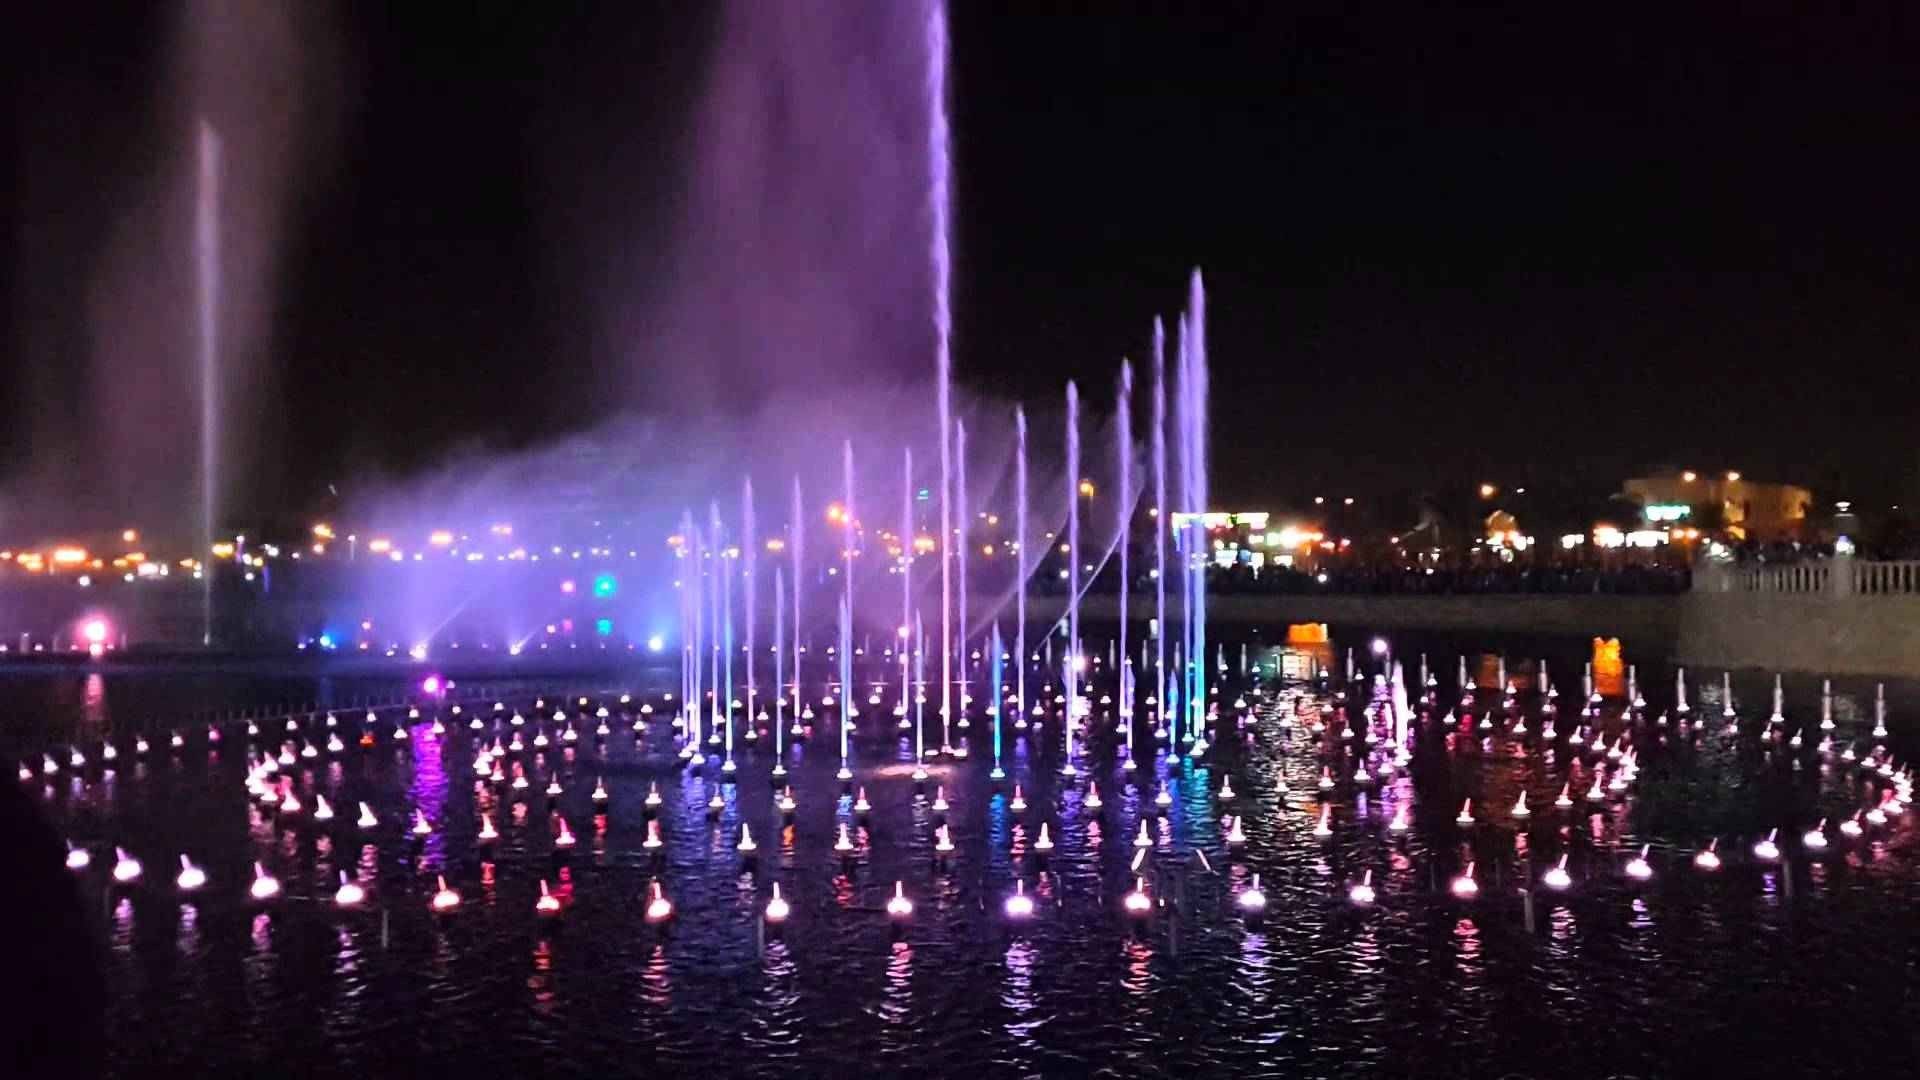 أشهر مواقع جميلة بالليل في الرياض للتنزه - منتزه سلام الرياض..